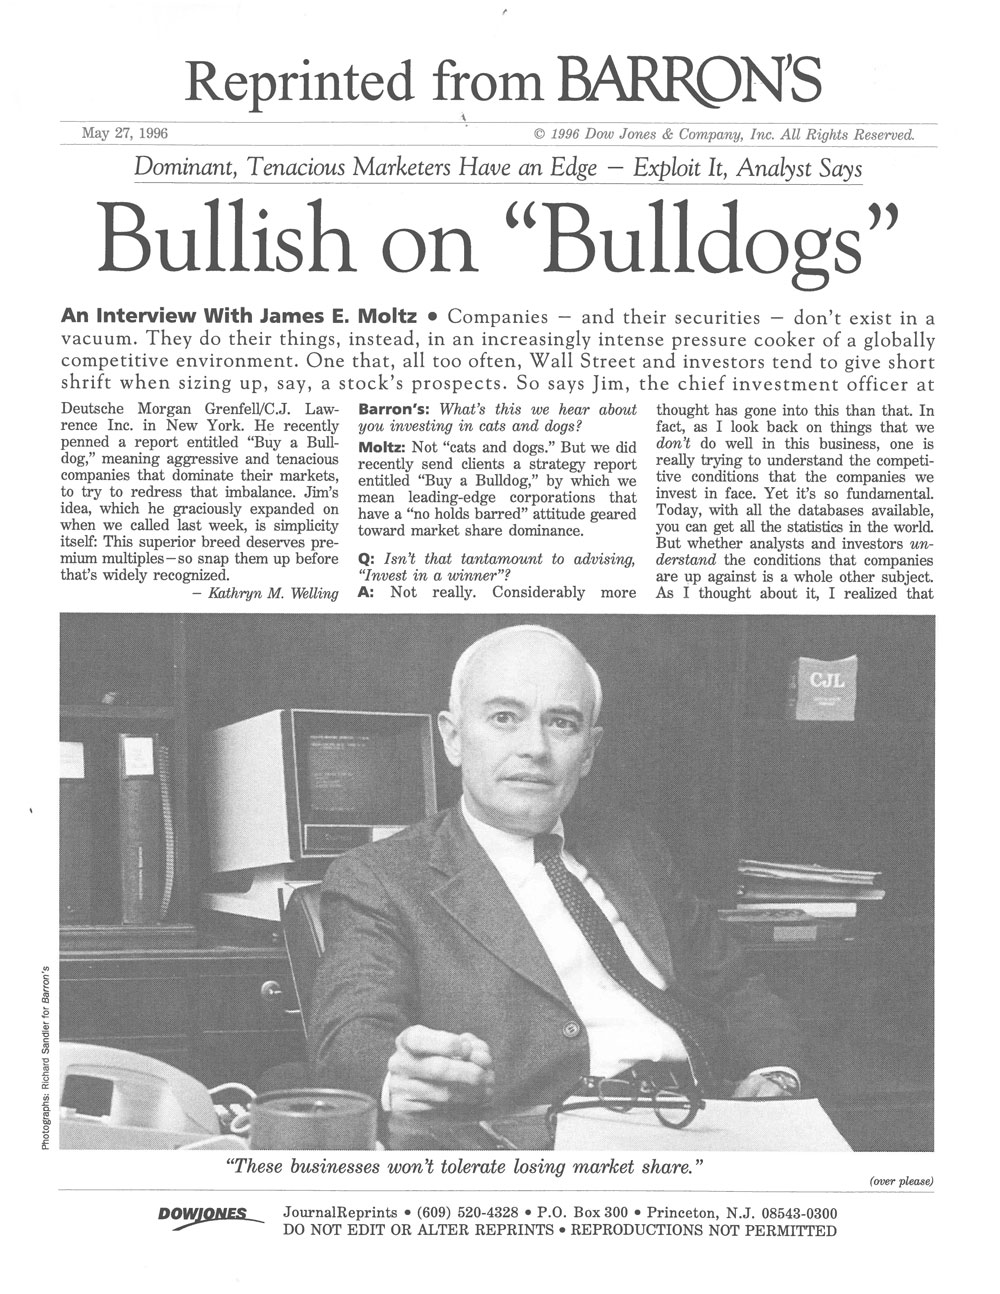 Bullish on Bulldogs